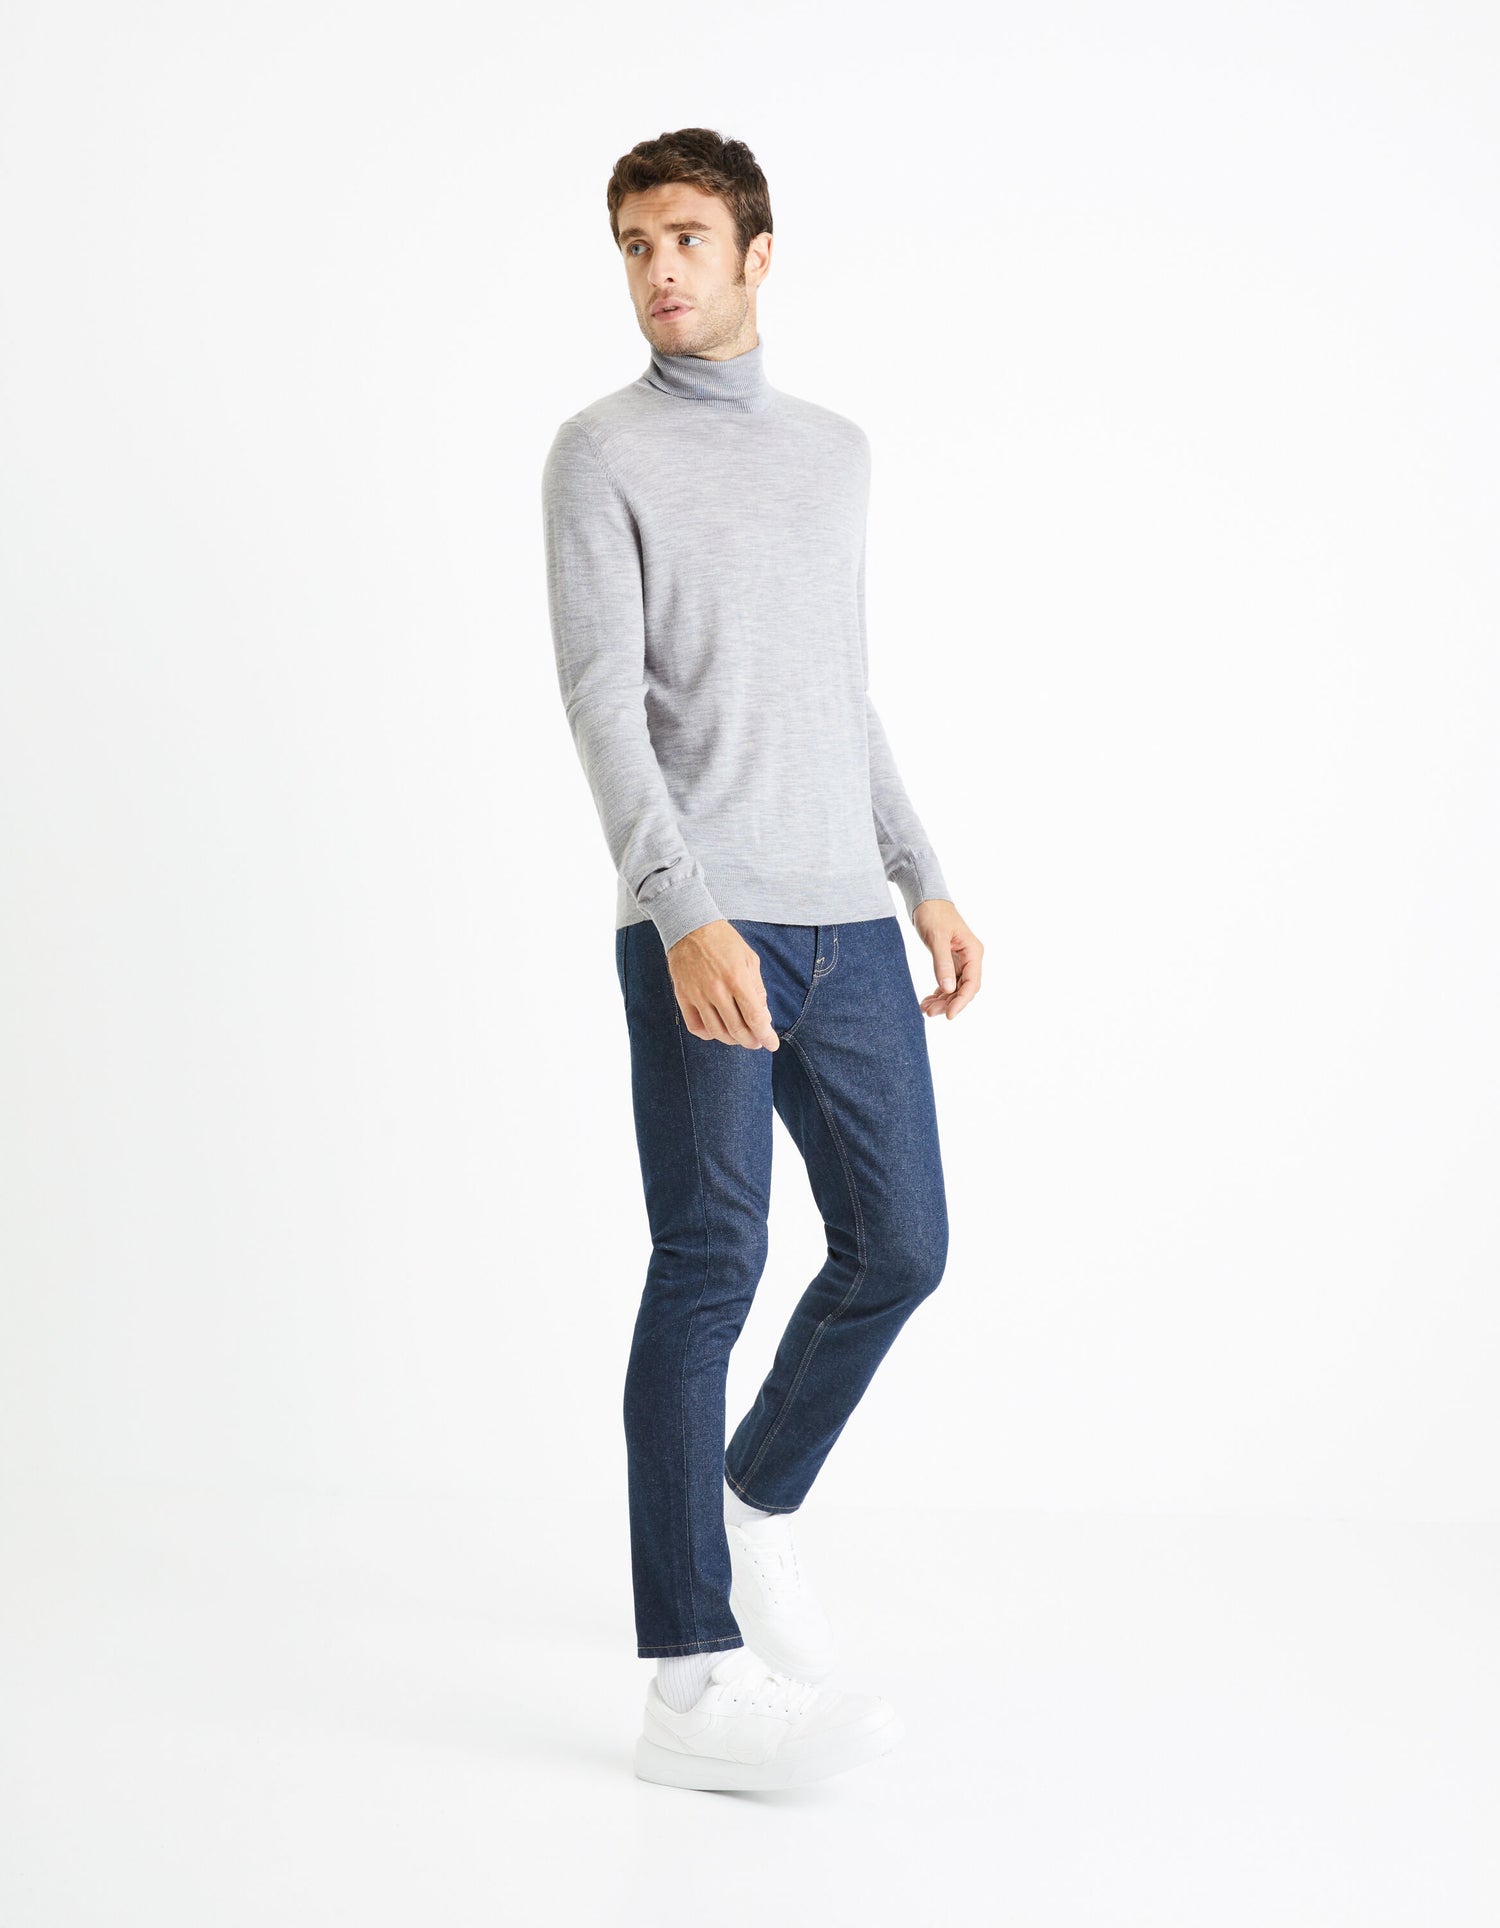 Turtleneck Sweater 100% Merino Wool_MENOS_GREY MEL_03